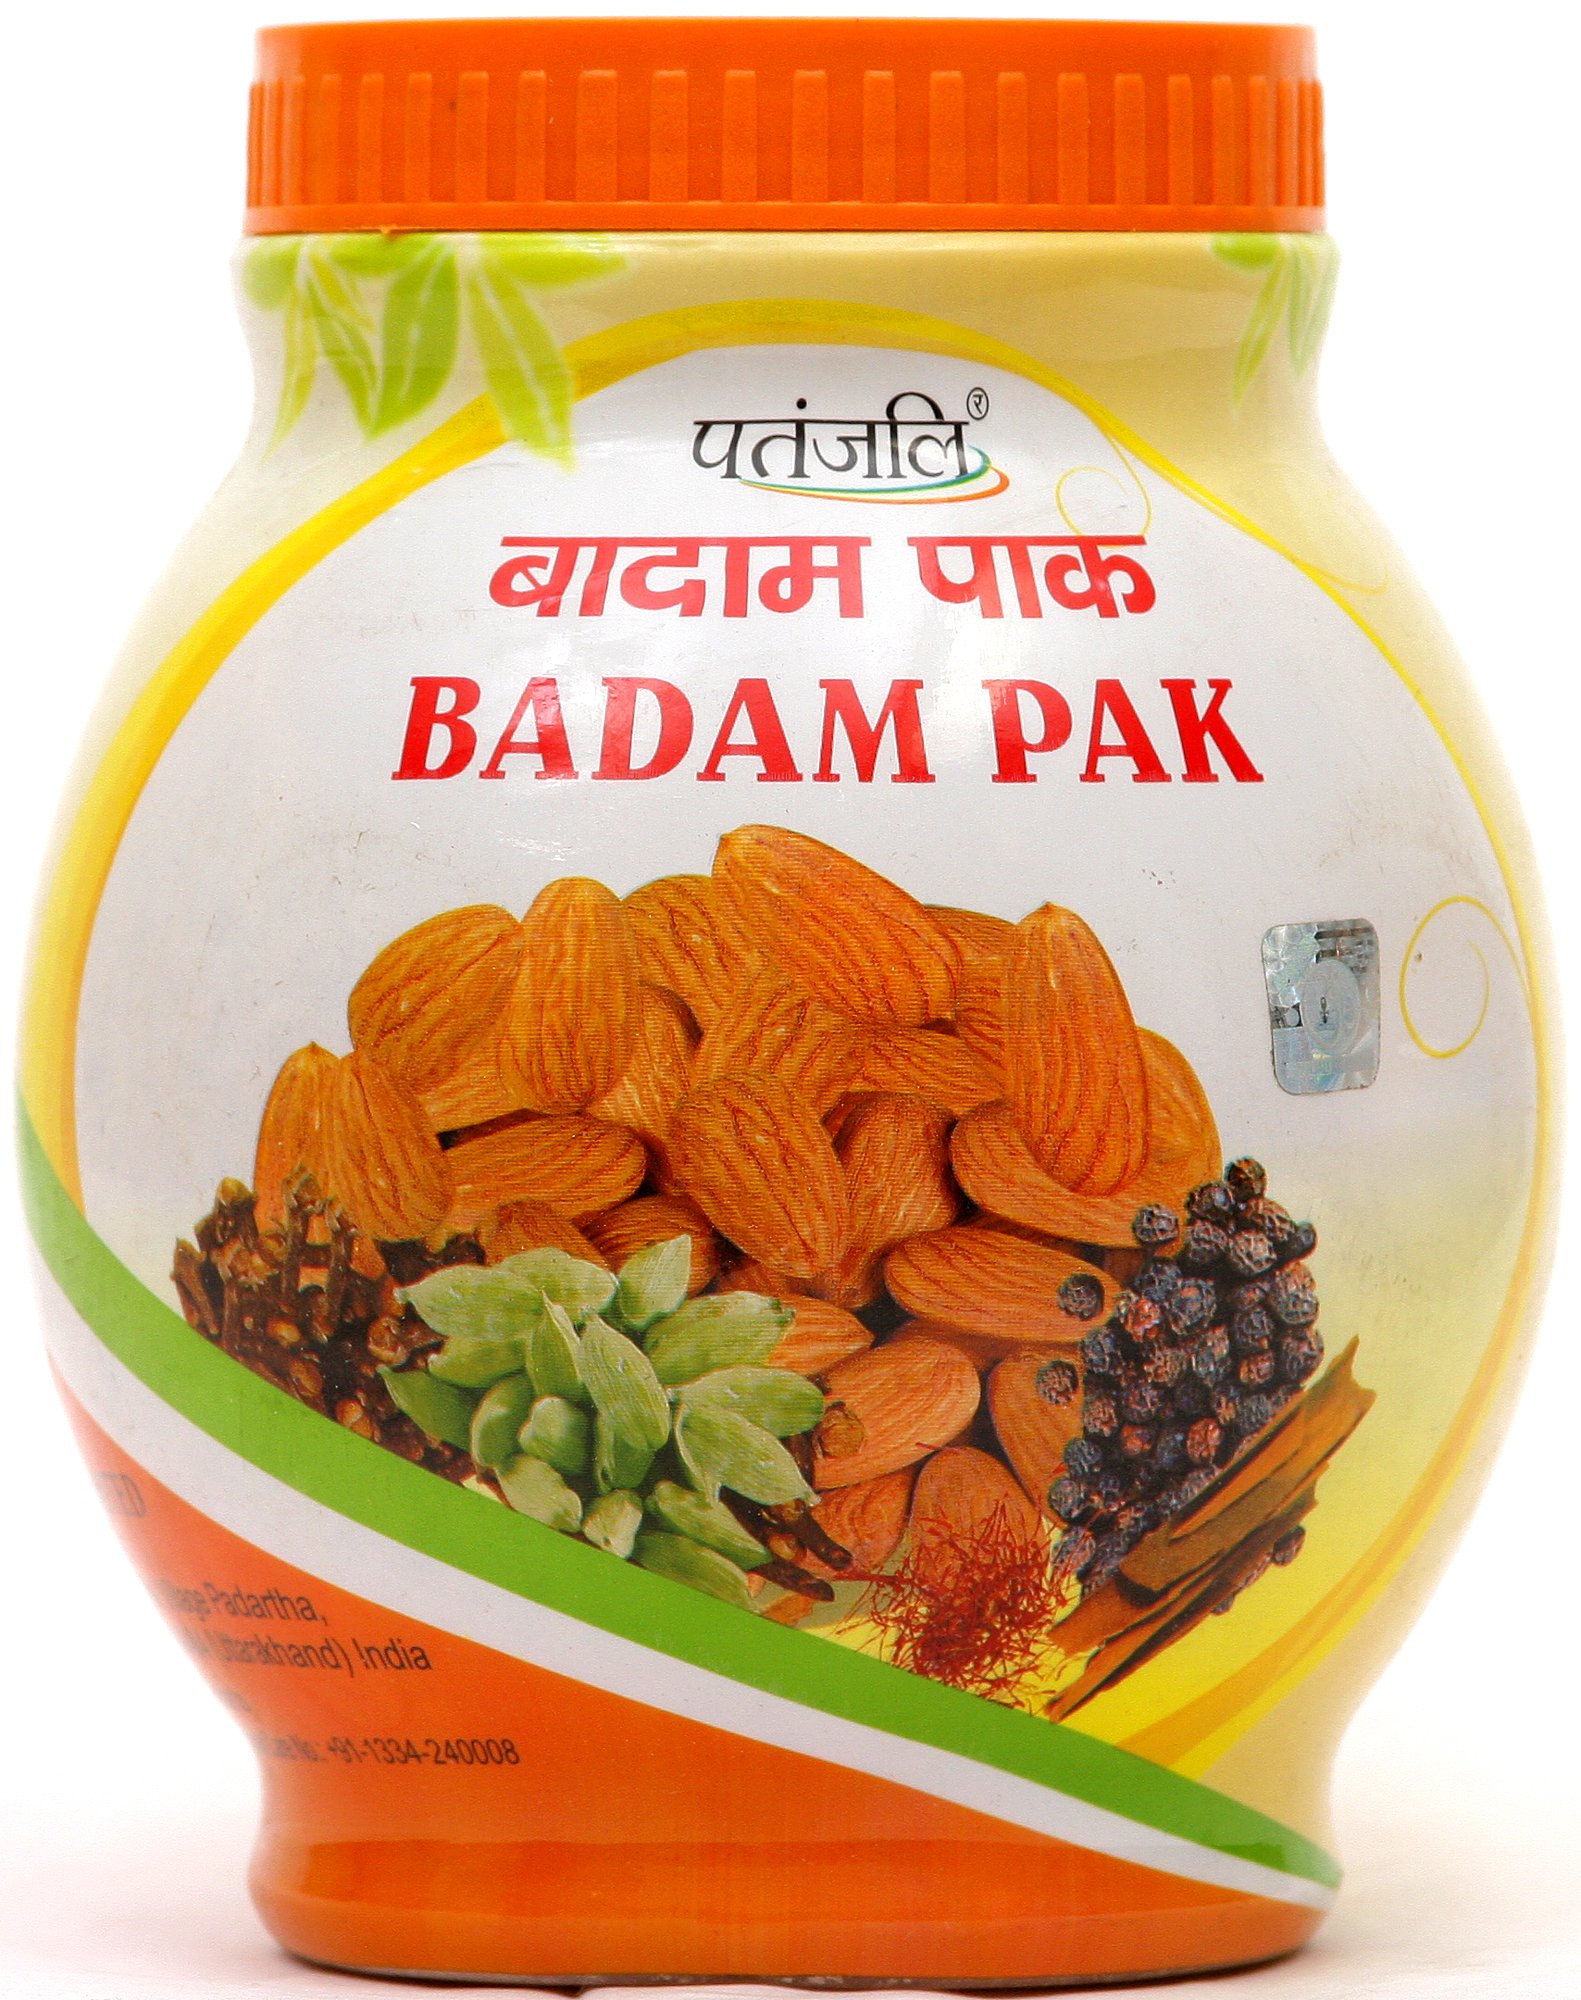 Badam Pak - book cover